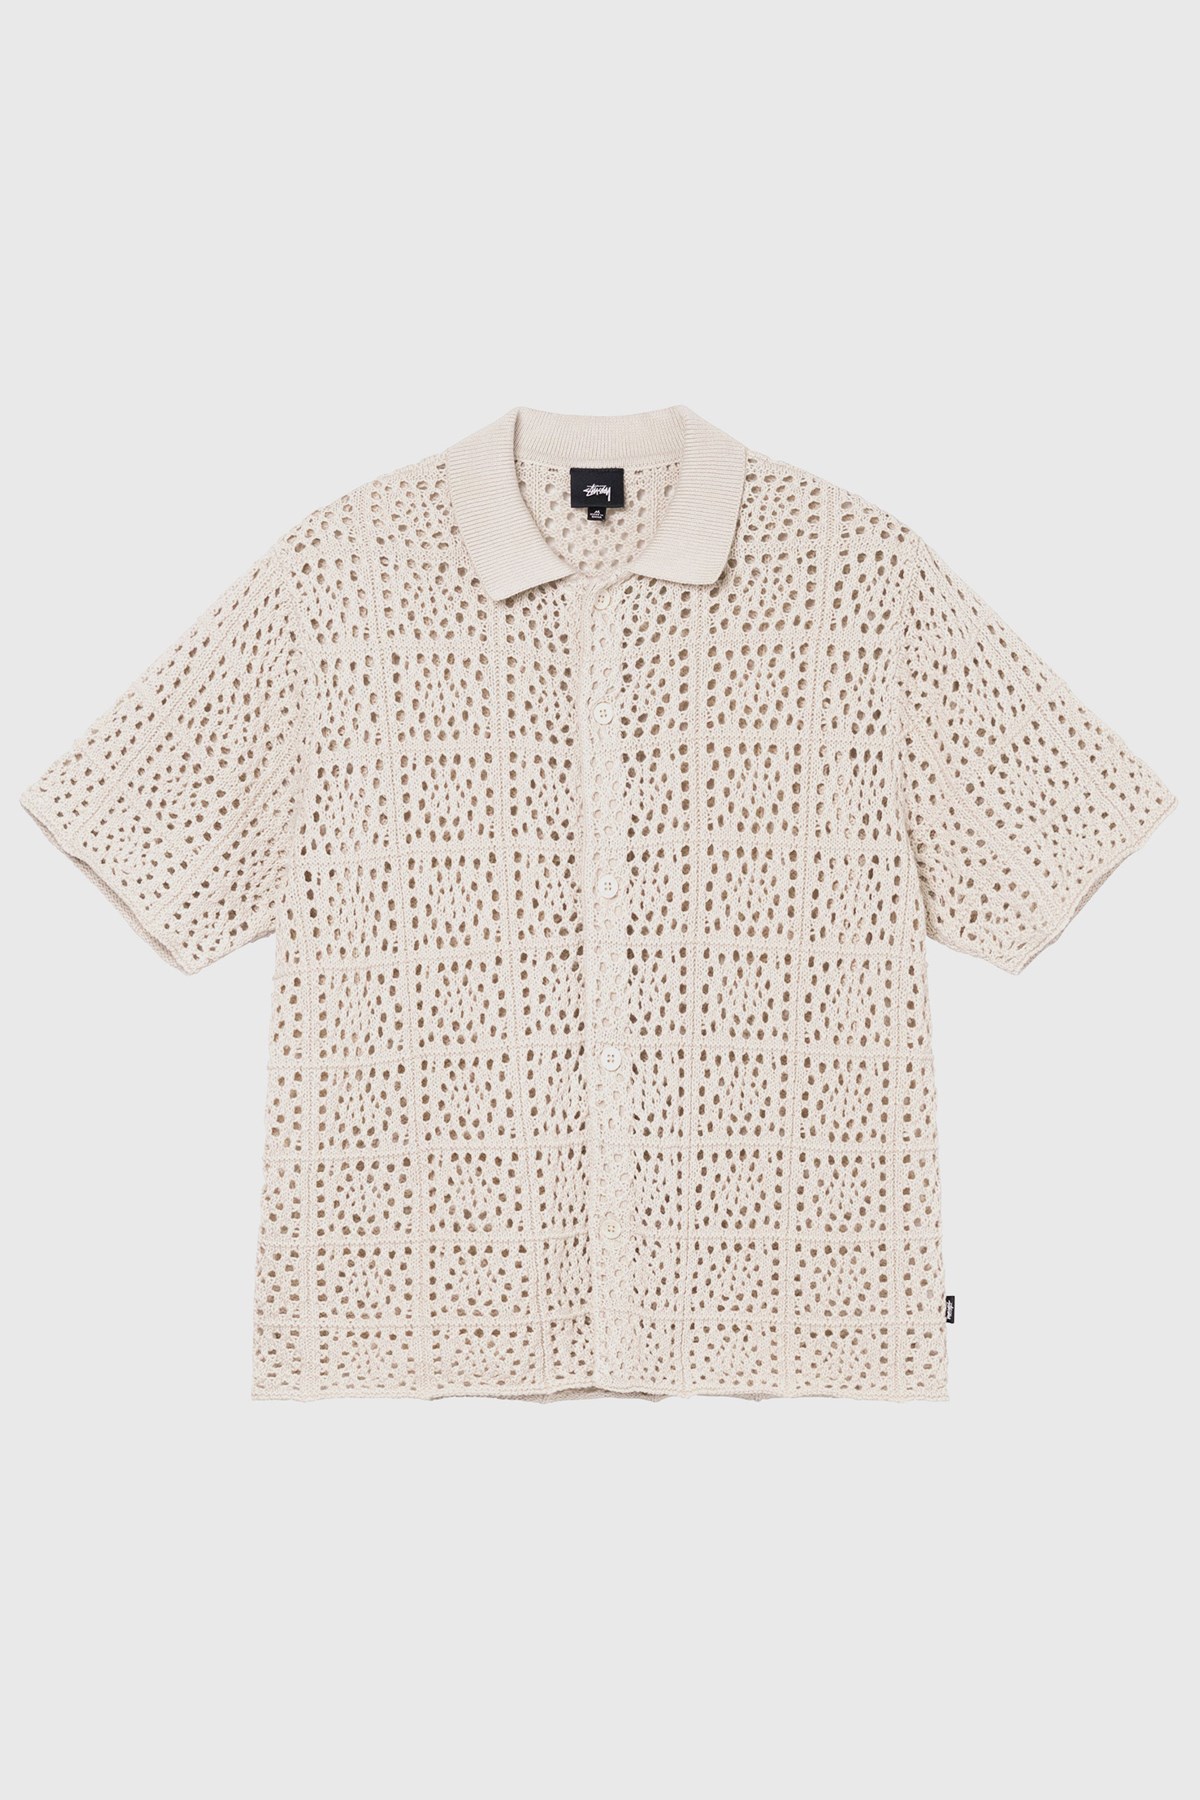 配信元STUSSY crochet shirt XLサイズ トップス